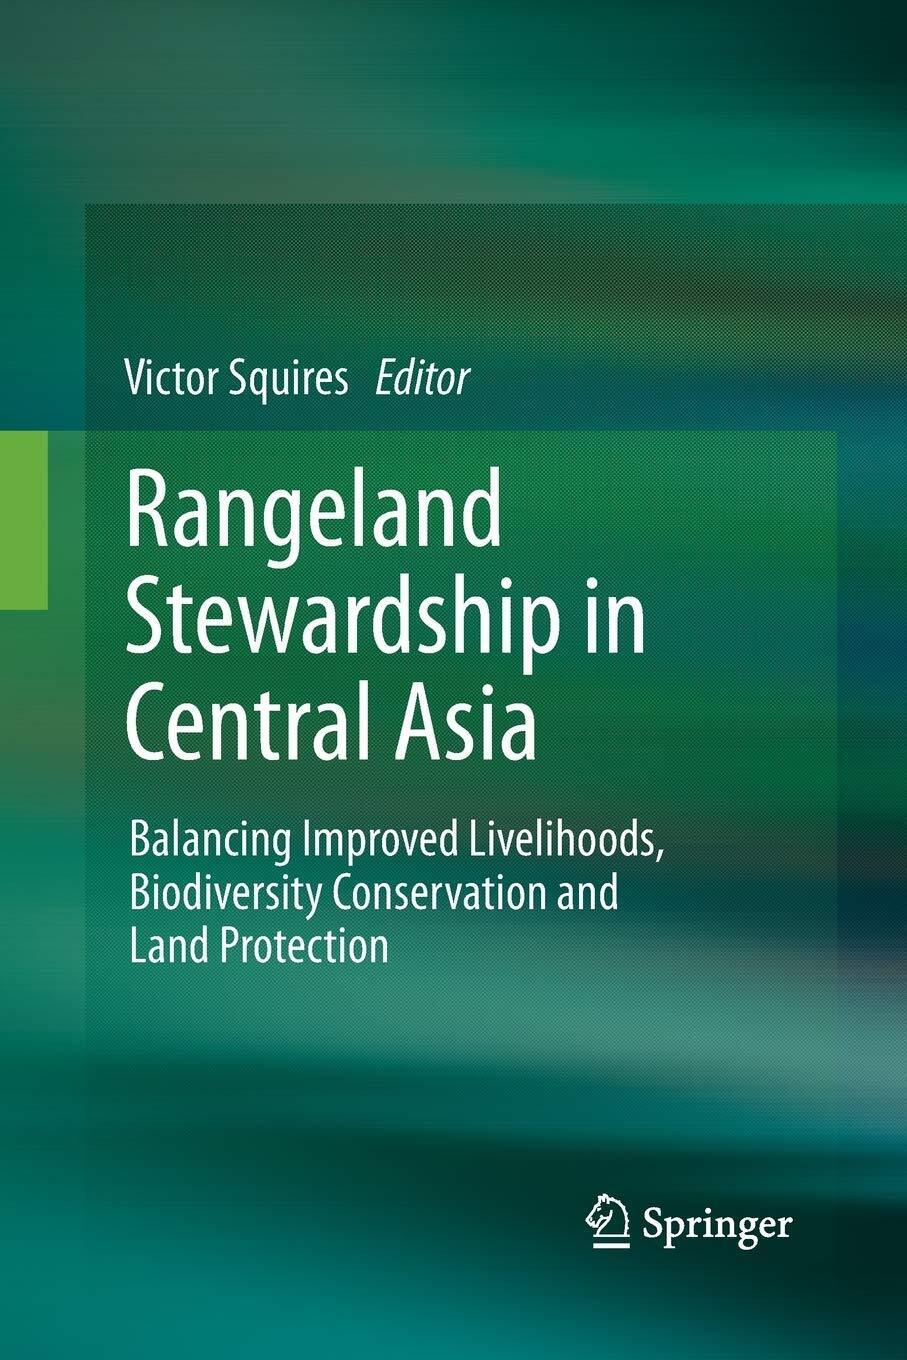 Rangeland Stewardship in Central Asia - Victor R. Squires - Springer, 2014